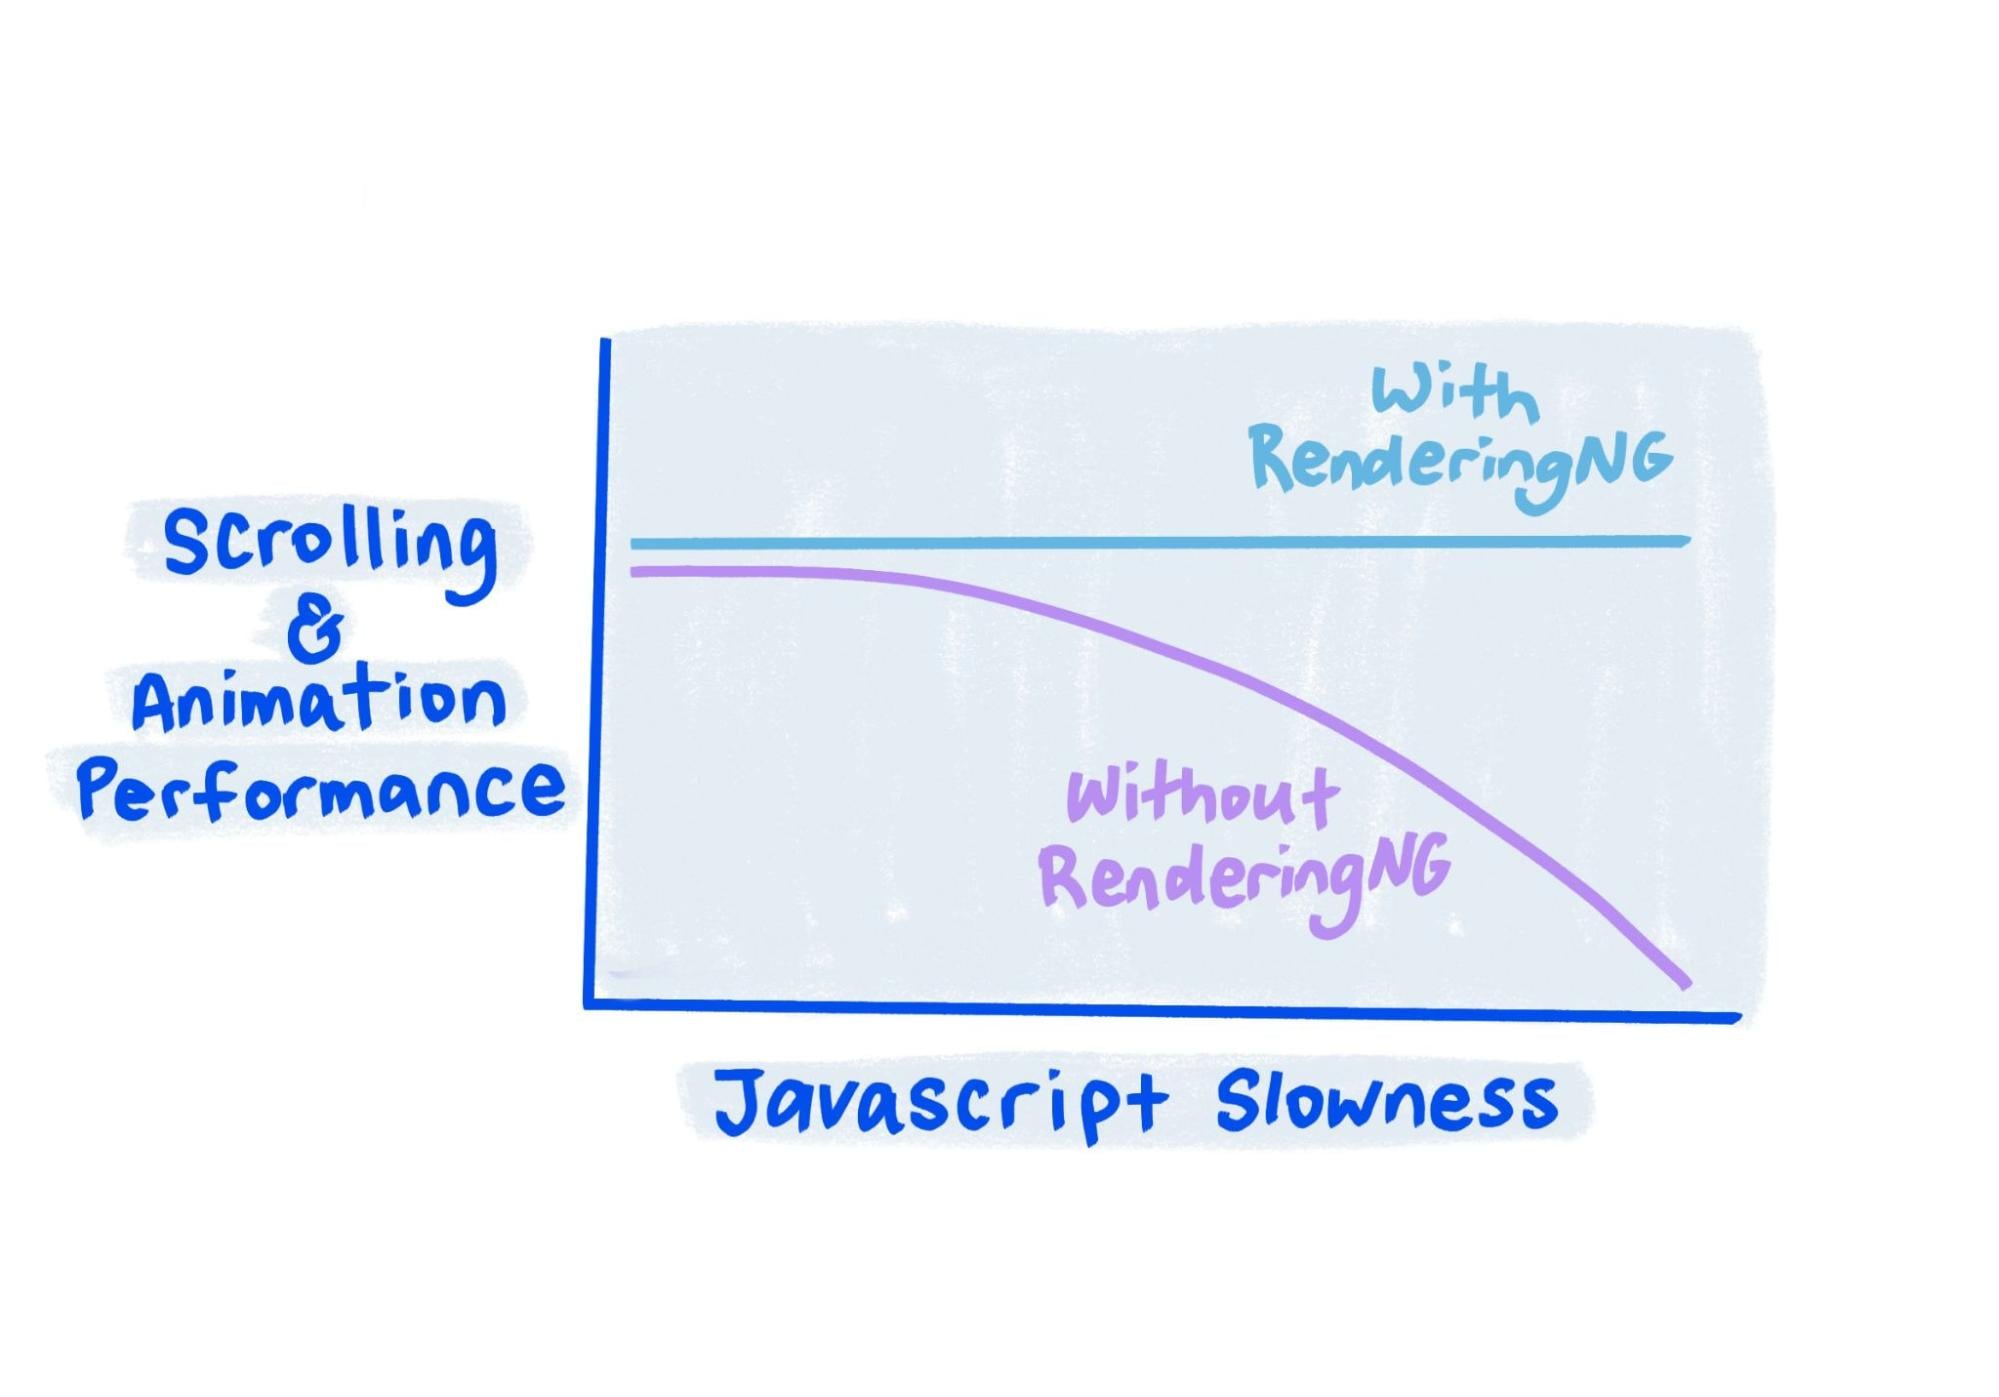 Sketch montre qu&#39;avec RenderingNG, les performances restent stables même lorsque JavaScript est très lent.